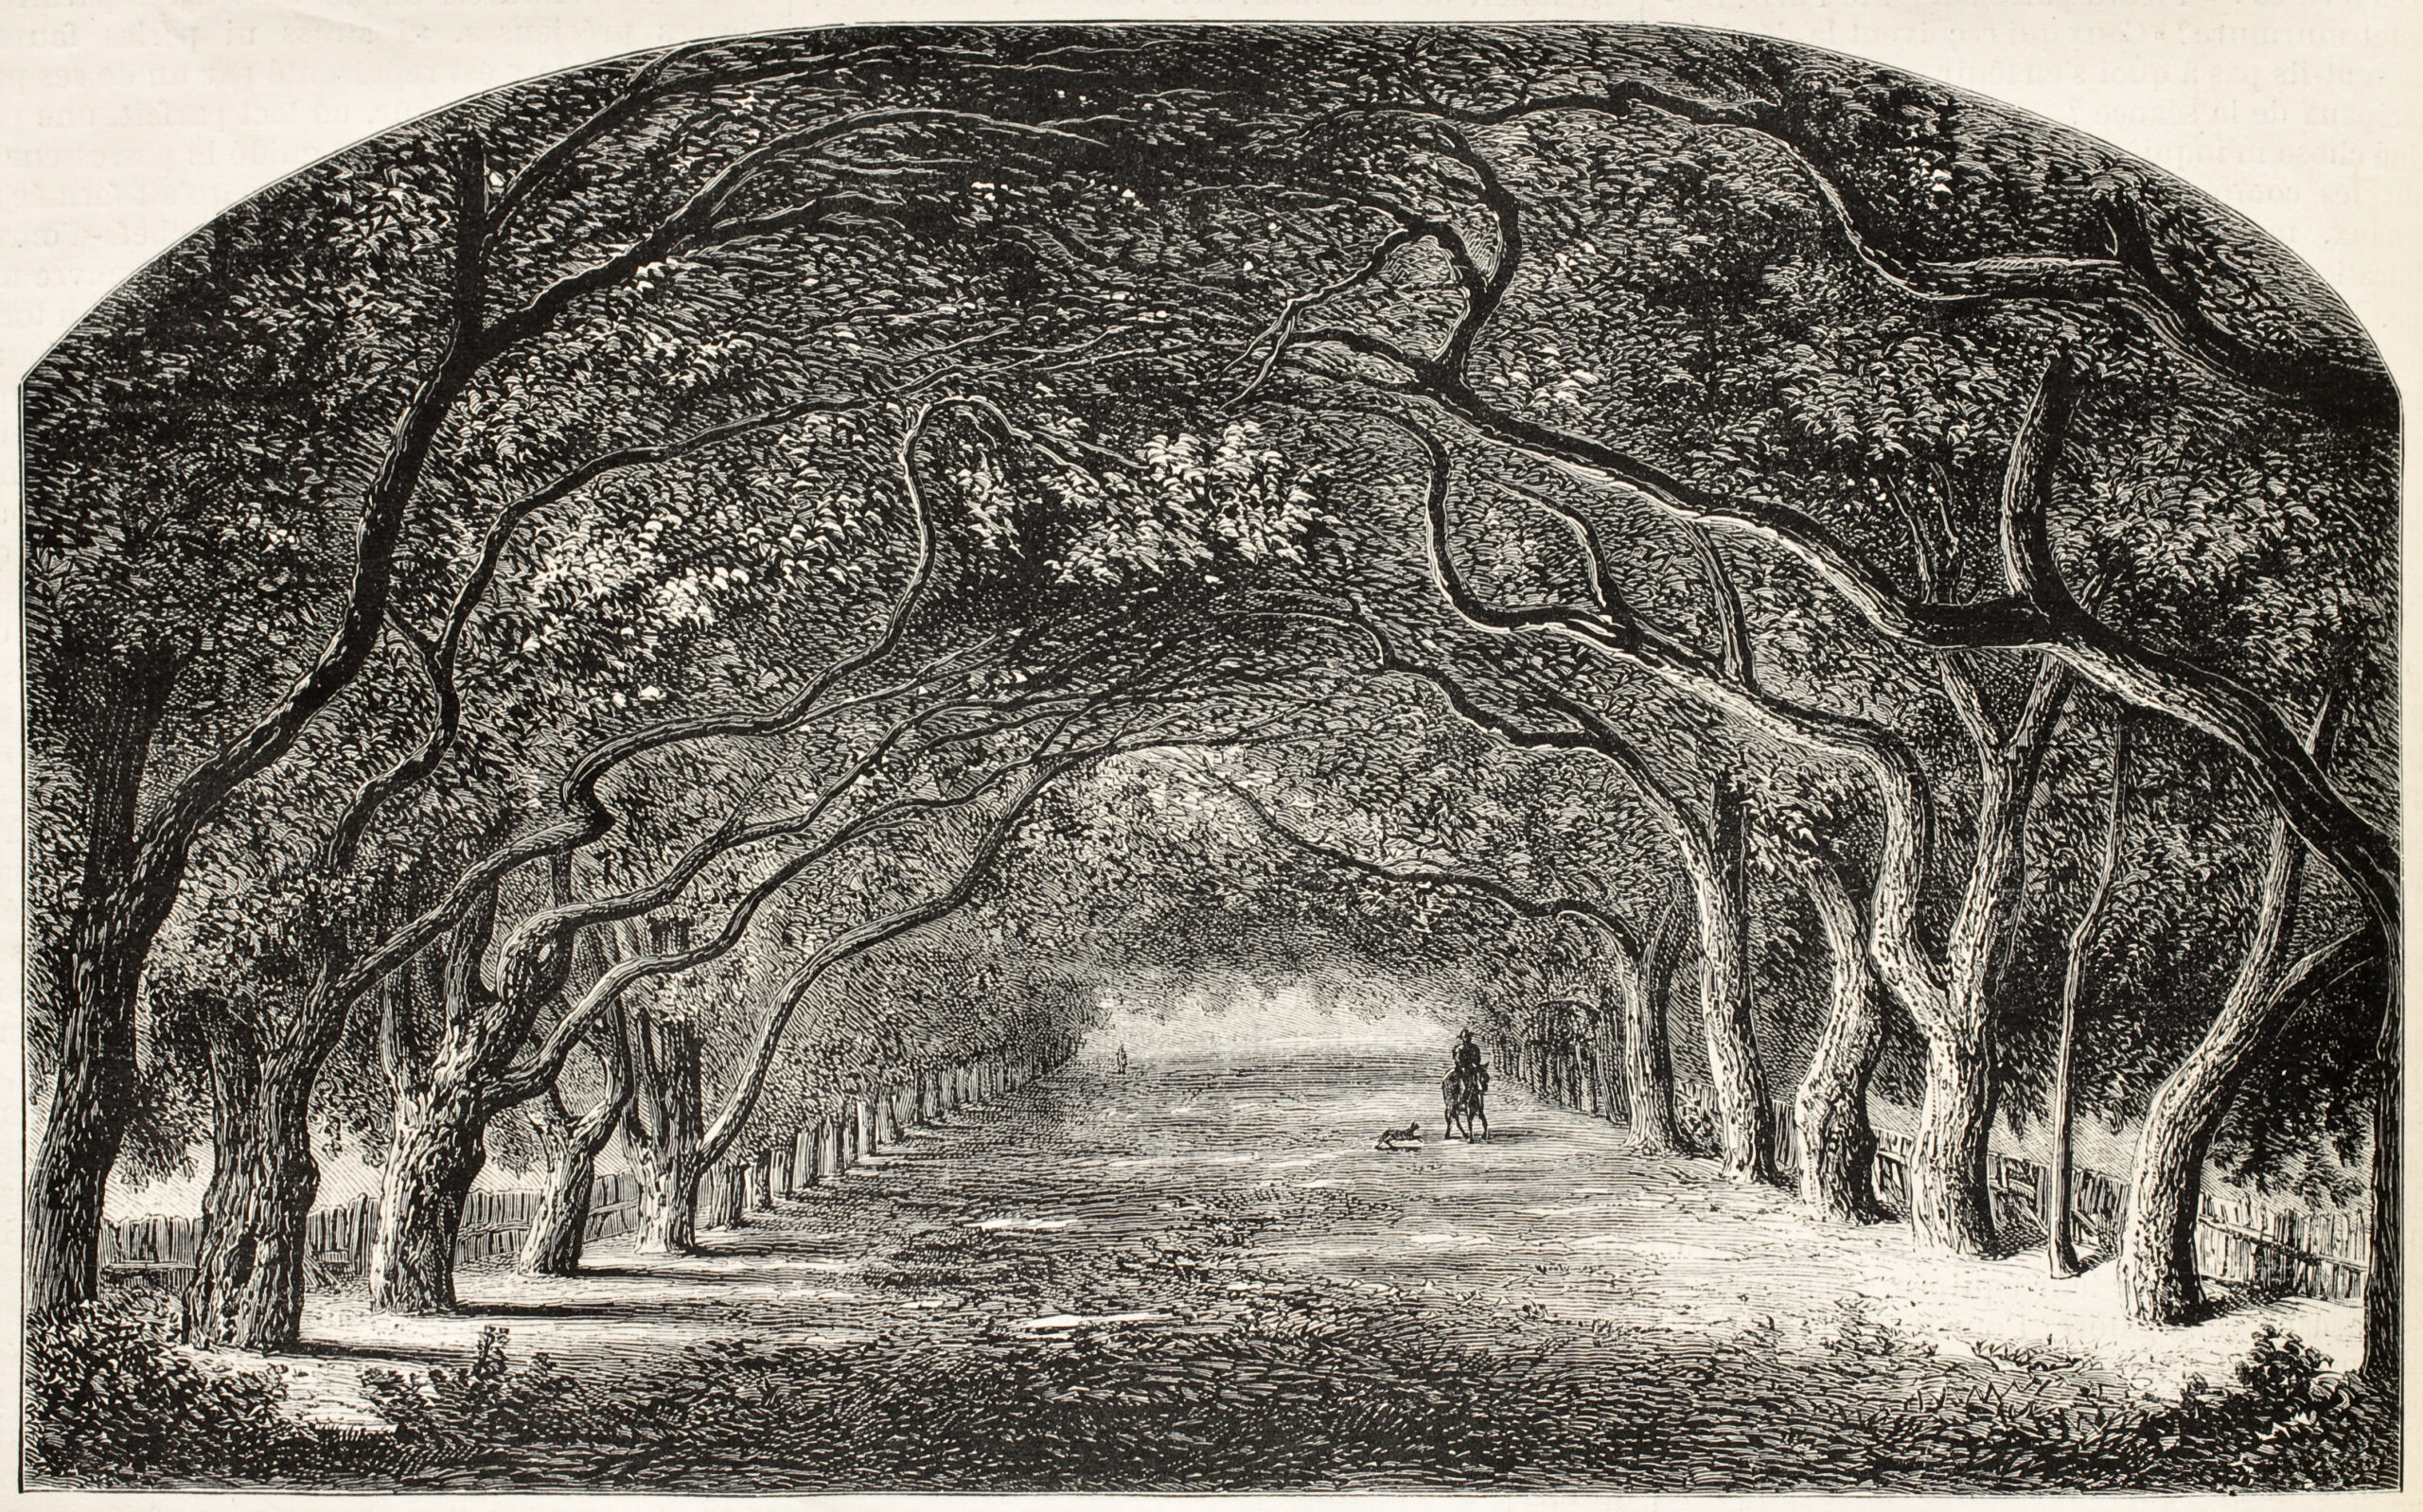 Vieille illustration de marche en châtaignier. Créé par De Bar et Cosson-Smeeton, après la tablette de Rousseau dans la galerie Khalil-Bey. Publié sur L'Illustration, Journal Universel, Paris, 1868